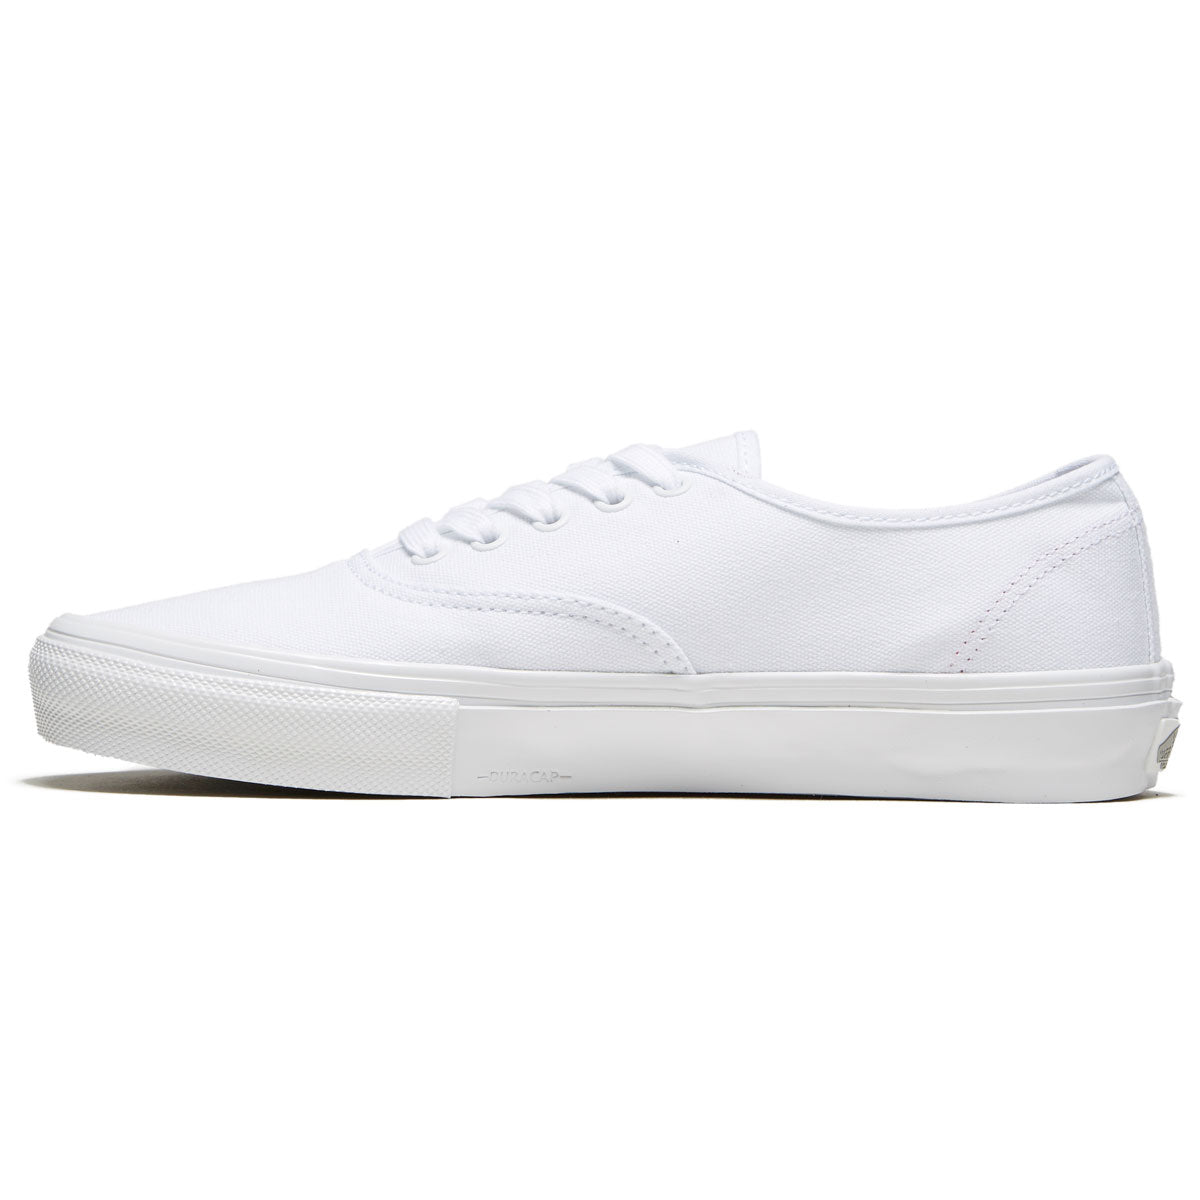 Vans Skate Authentic Shoes - True White image 2